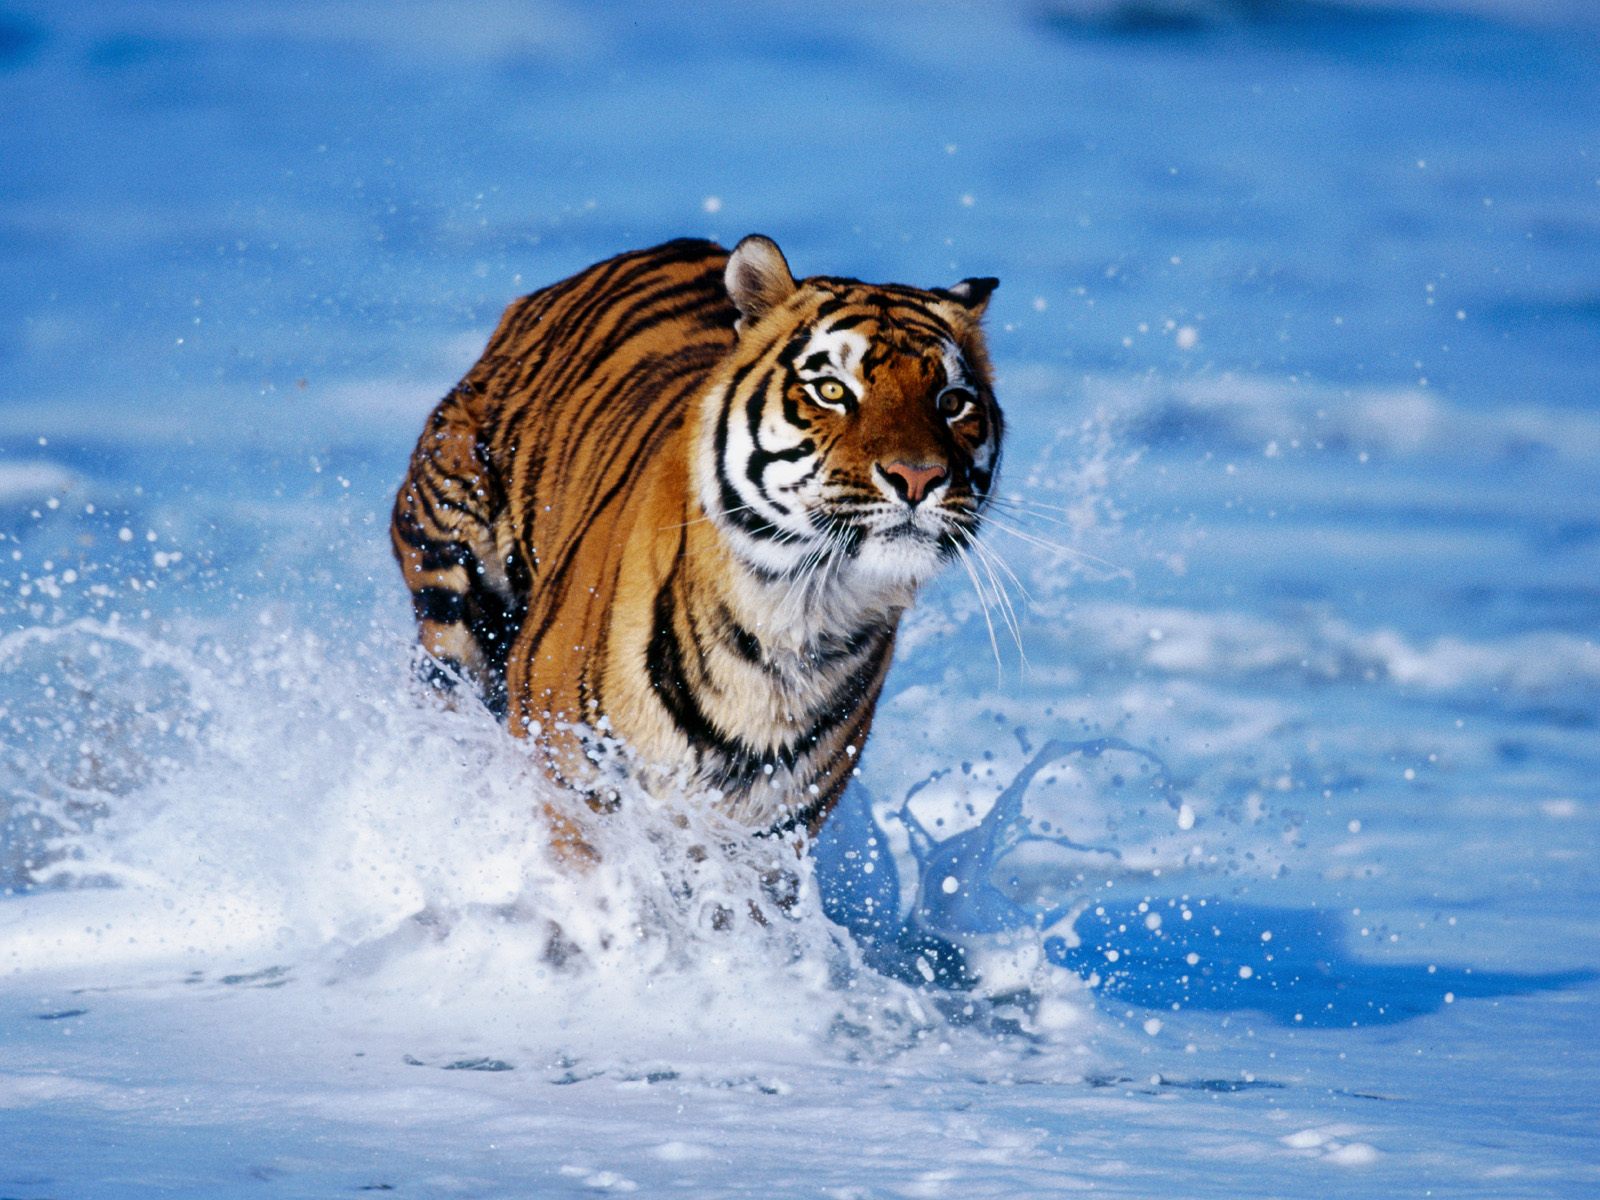 Tiger_0001.jpg